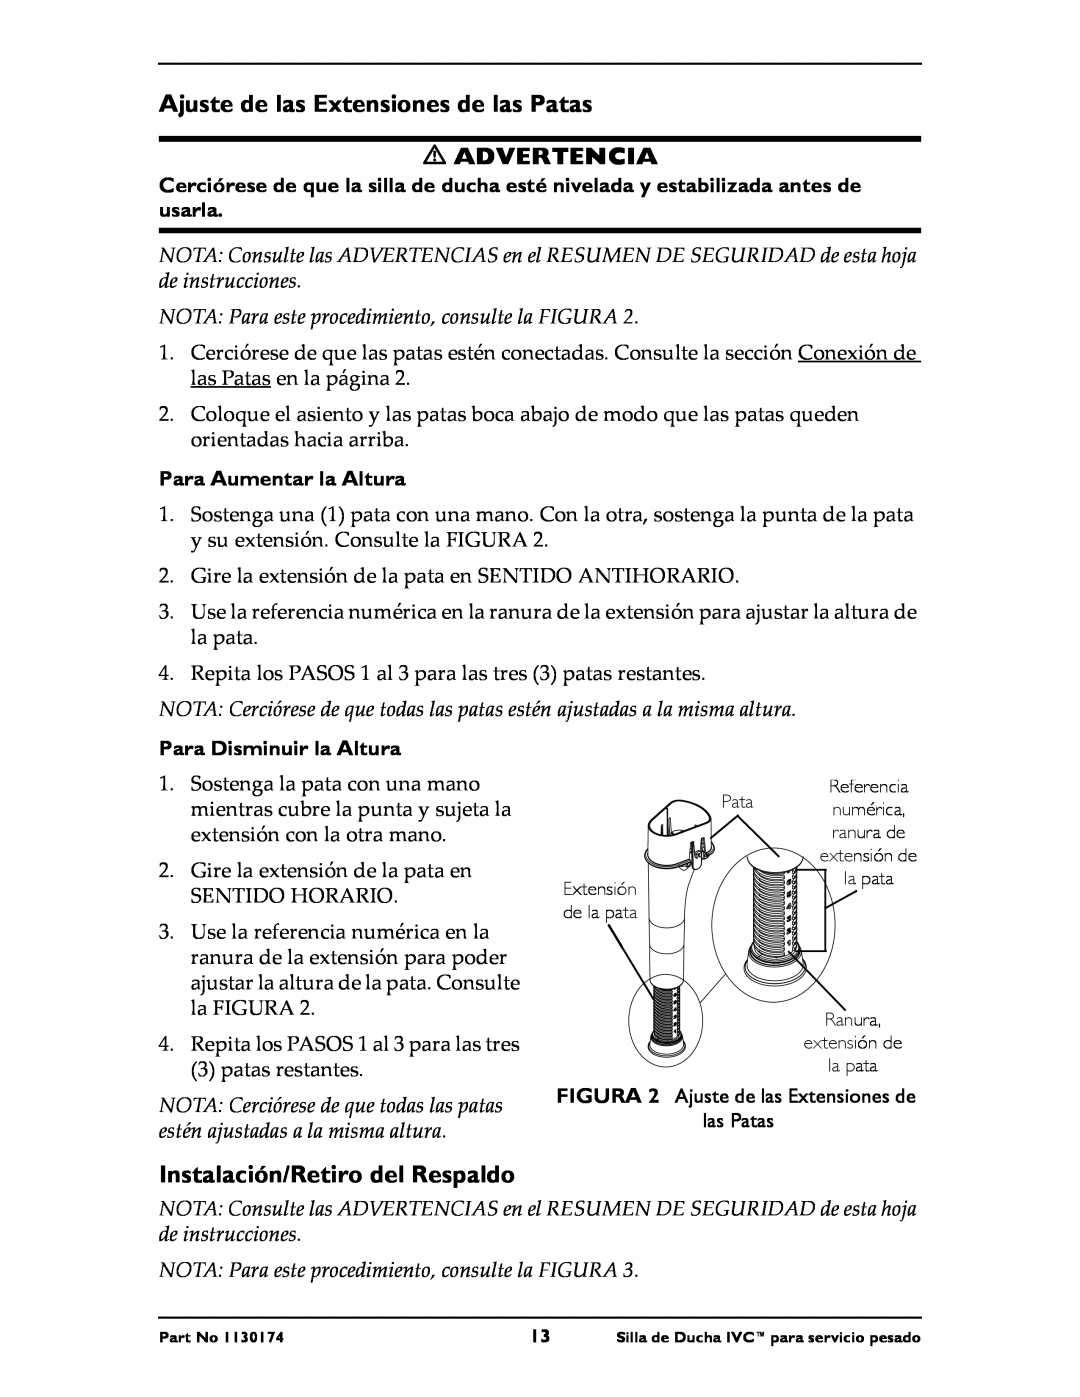 Invacare 9781E, 9780E instruction sheet Ajuste de las Extensiones de las Patas, Instalación/Retiro del Respaldo, Advertencia 